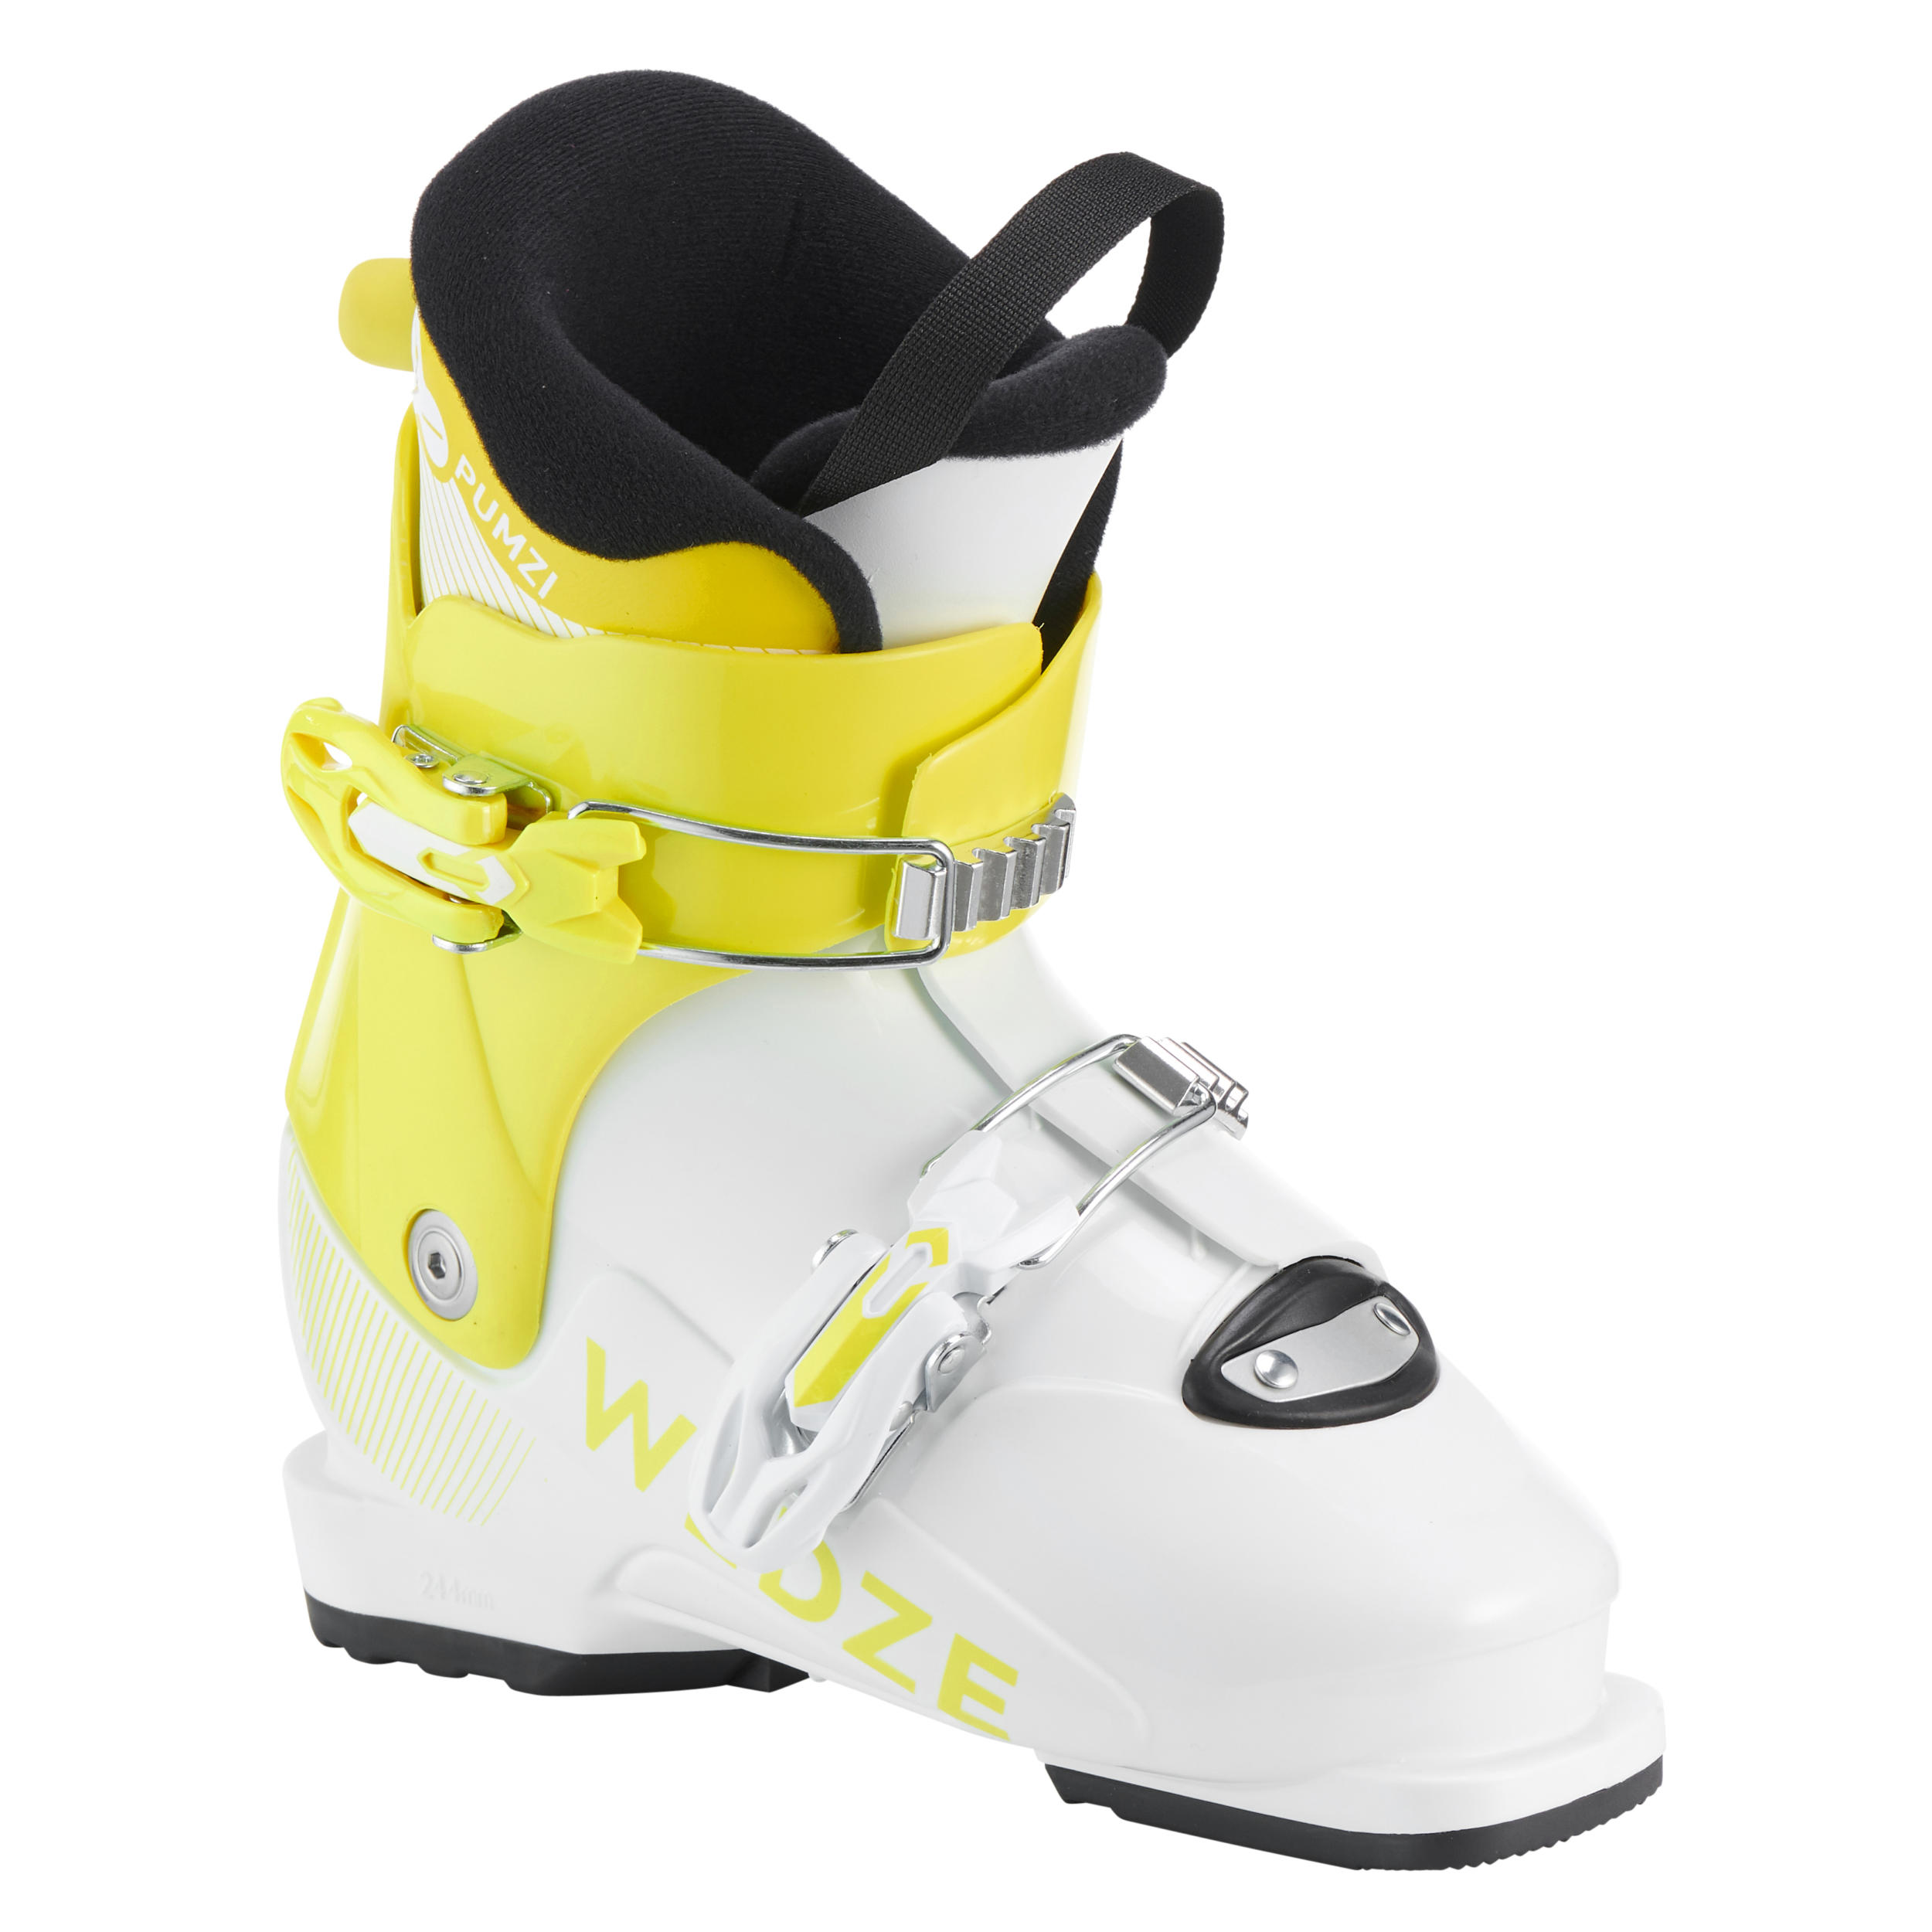 Image of Kids’ Downhill Ski Boots - Pumzi 500 Yellow